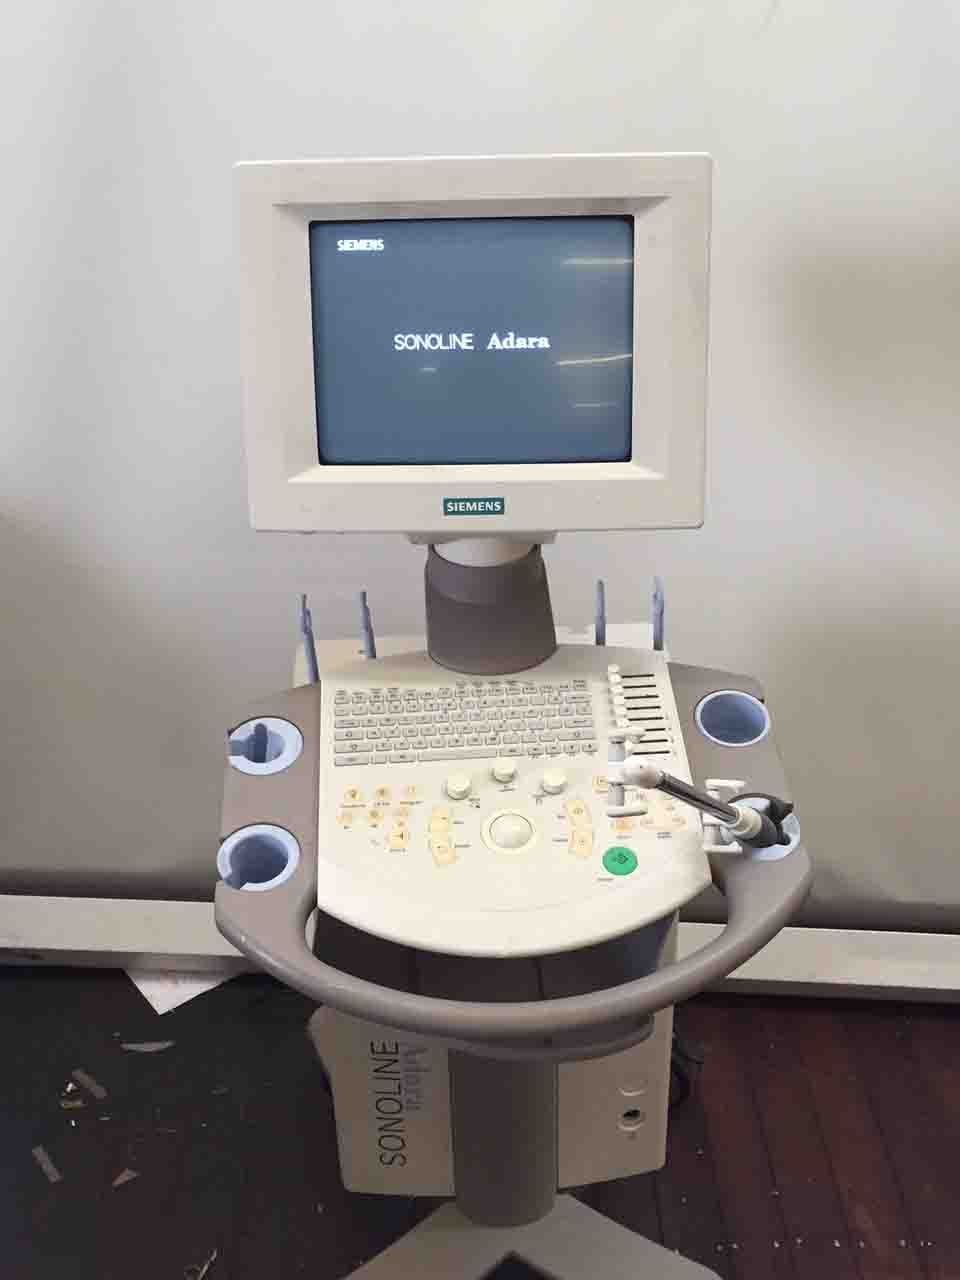 Siemens Sonoline Adara Ultrasound Machine DIAGNOSTIC ULTRASOUND MACHINES FOR SALE